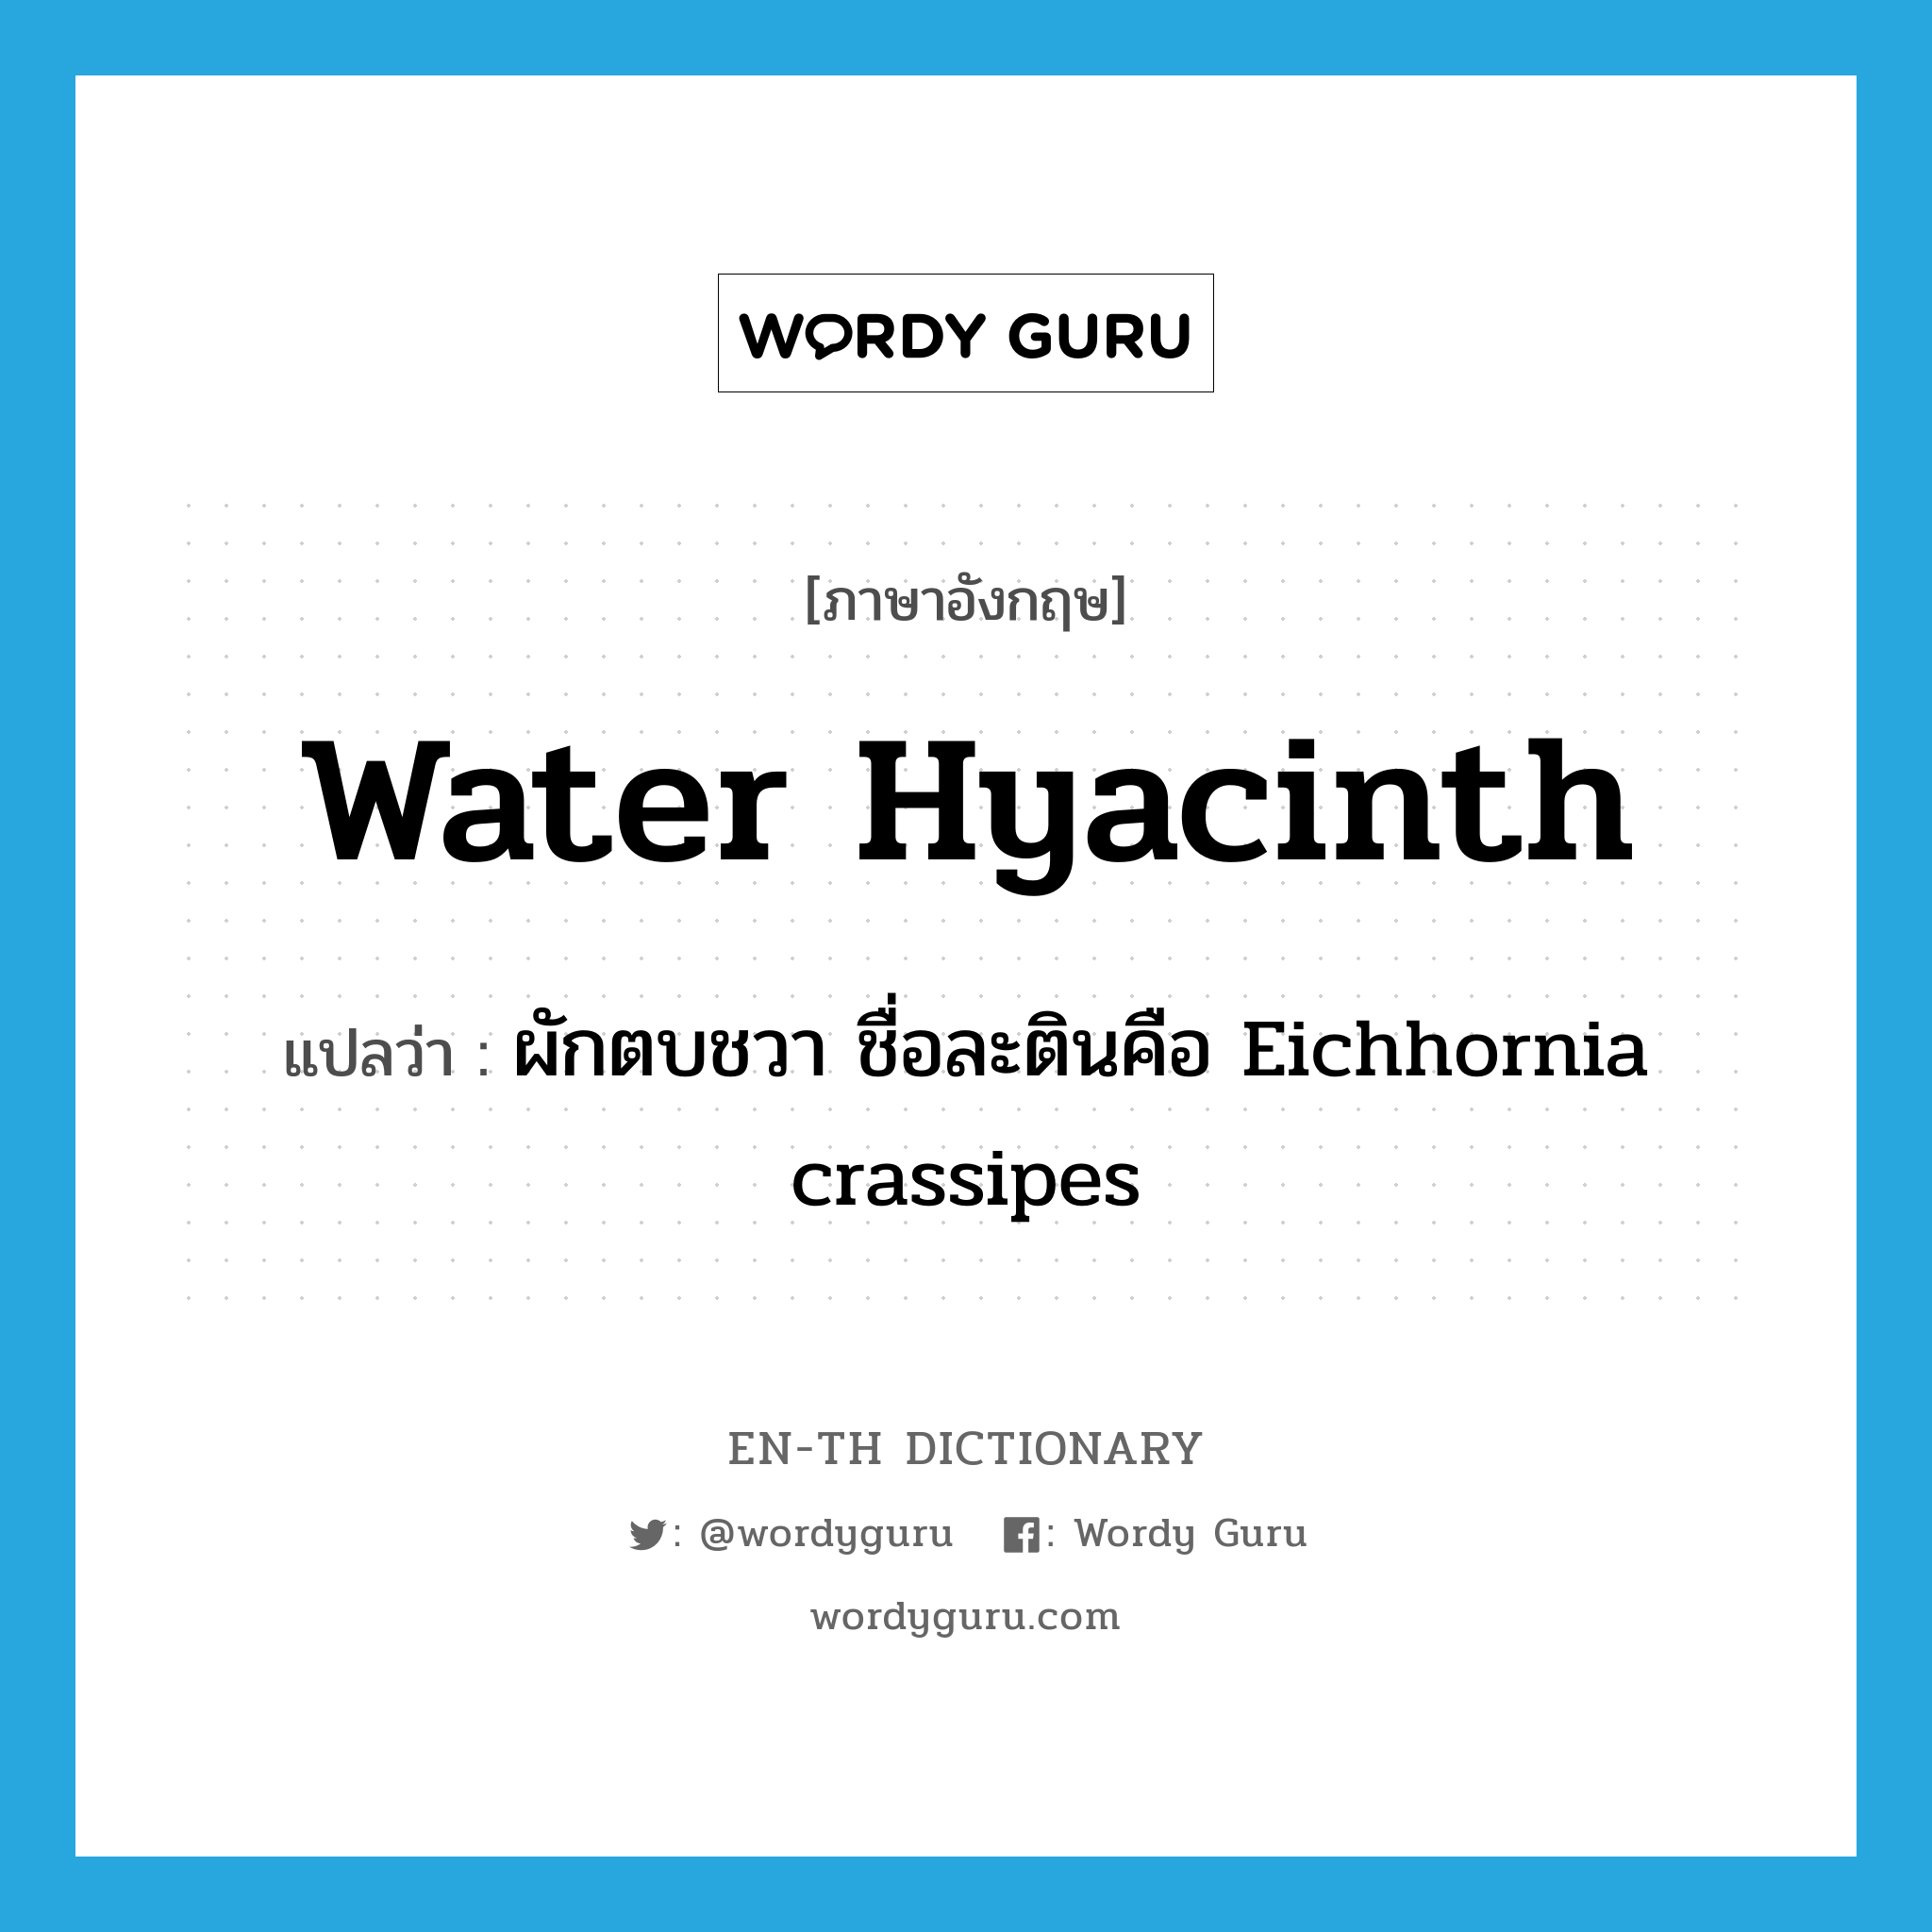 ผักตบชวา ชื่อละตินคือ Eichhornia crassipes ภาษาอังกฤษ?, คำศัพท์ภาษาอังกฤษ ผักตบชวา ชื่อละตินคือ Eichhornia crassipes แปลว่า water hyacinth ประเภท N หมวด N